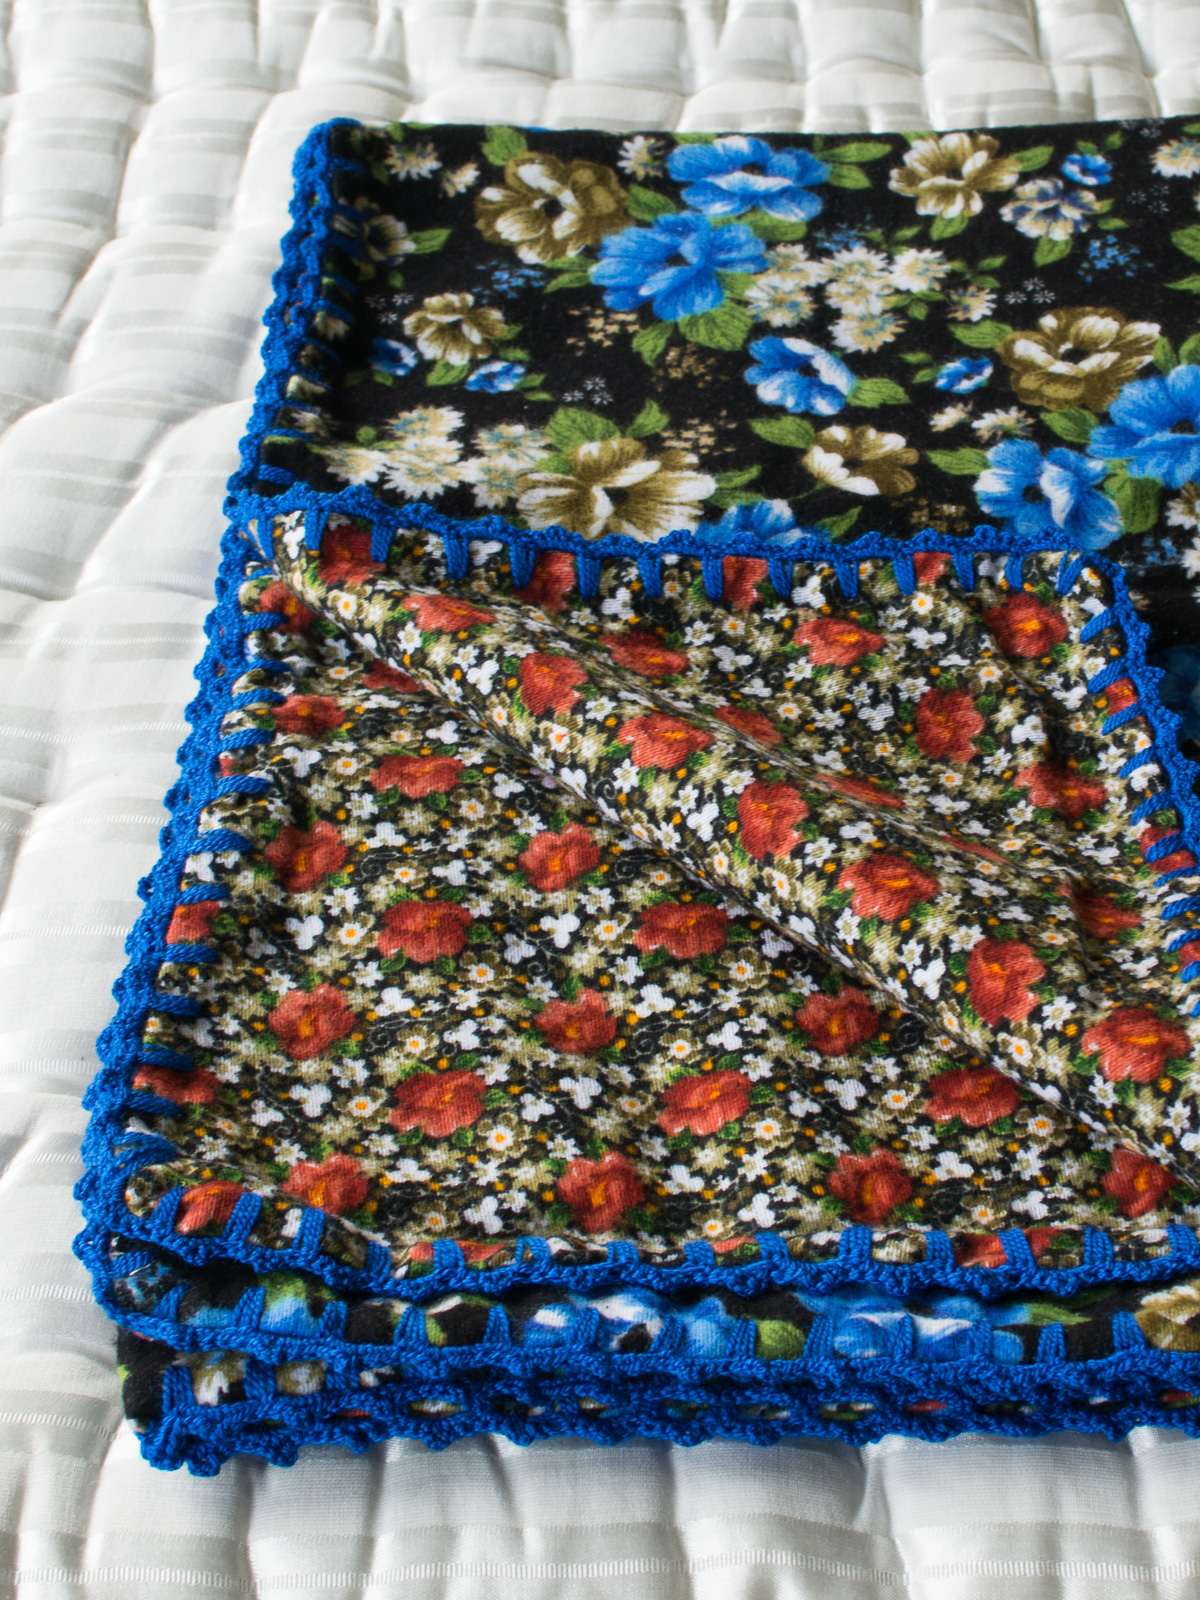 couverture bébé en flanelle with blue flowers